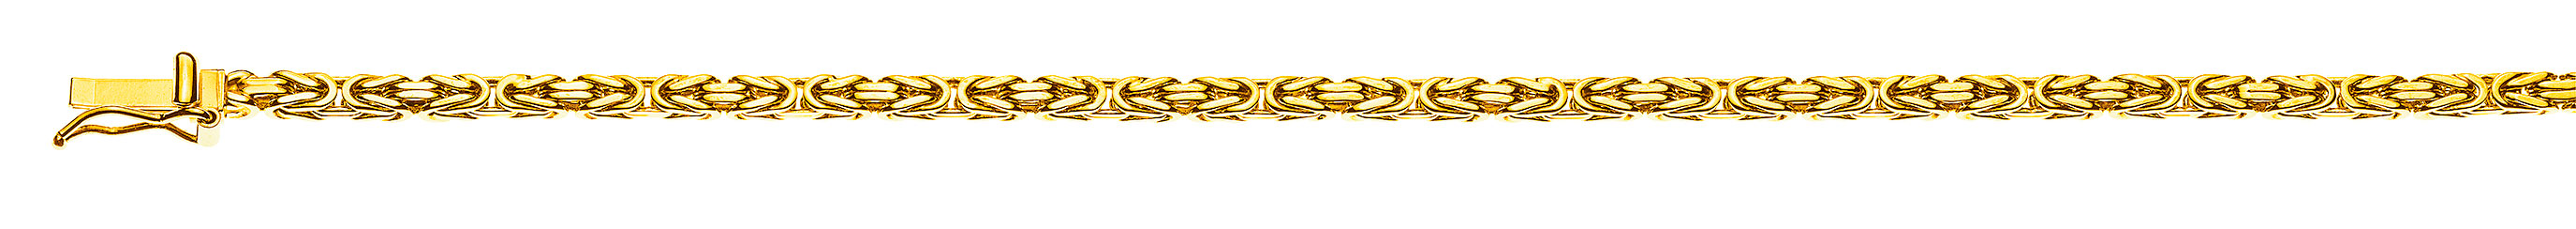 AURONOS Prestige Halskette Gelbgold 18K Königskette 60cm 2.5mm